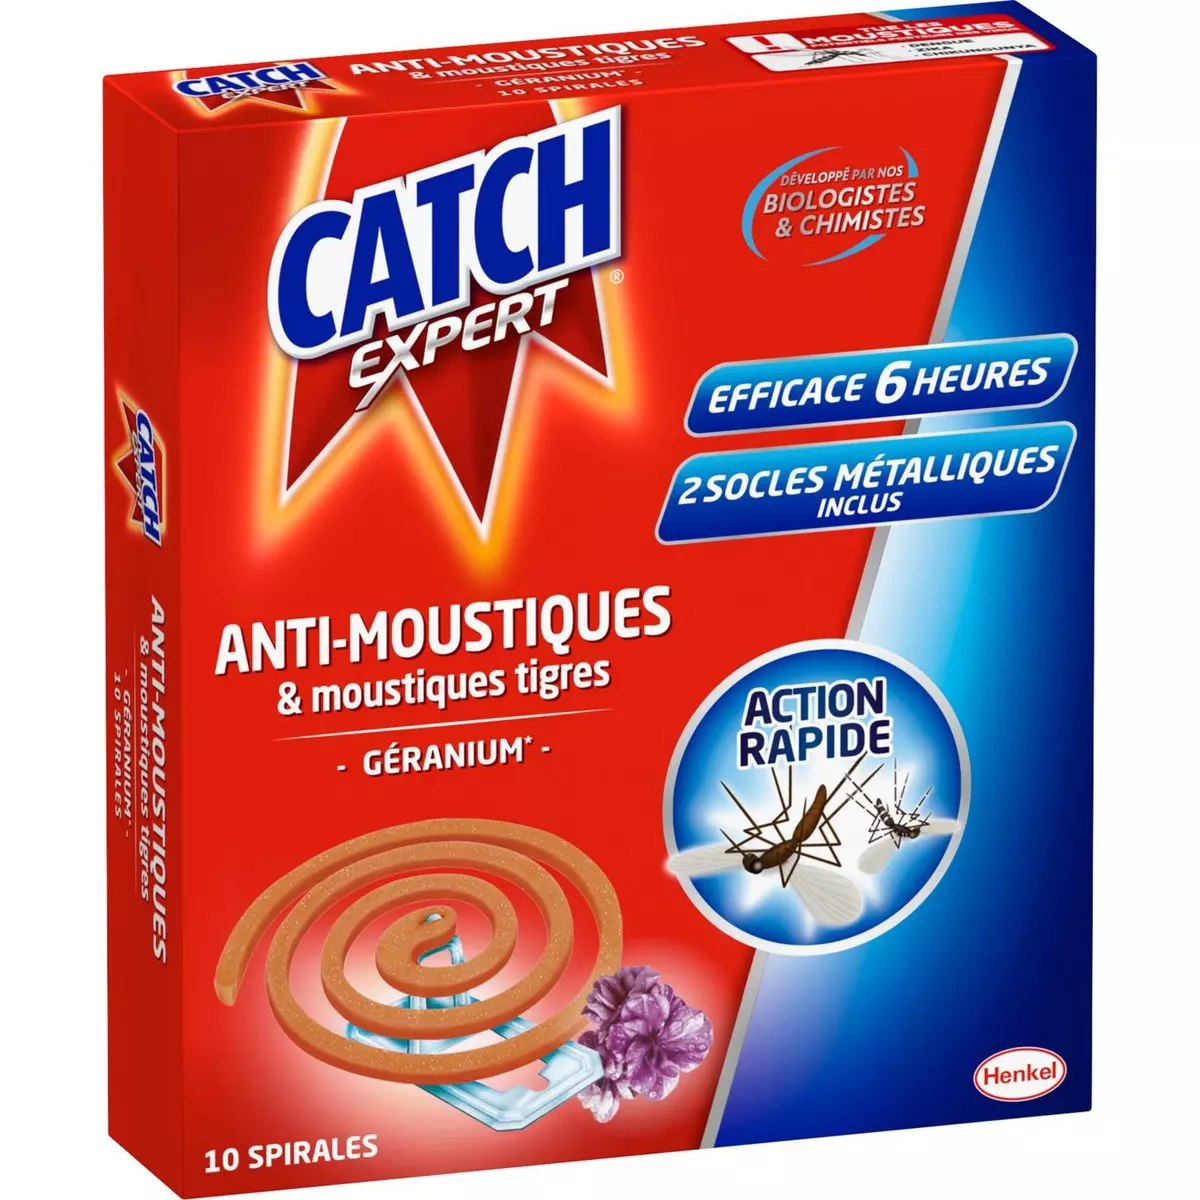 CATCH Spirales anti-moustiques moustiques-tigres parfum géranium 10x6 heures 10 spirales 2 socles